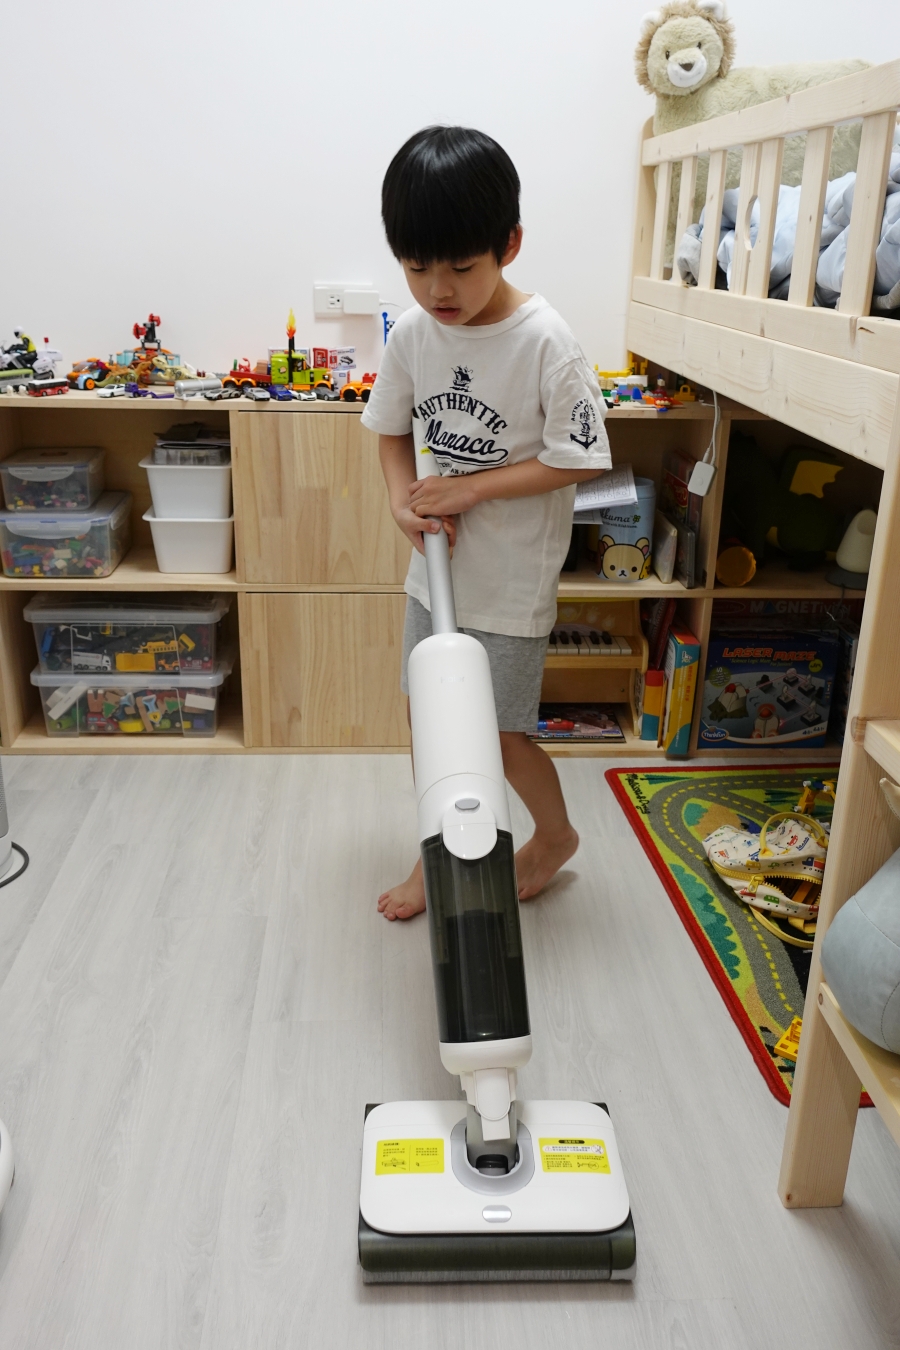 Haier海爾雙動力智慧洗地機X9高科技智慧拖把，讓小朋友也能輕鬆自己拖地洗地不費力